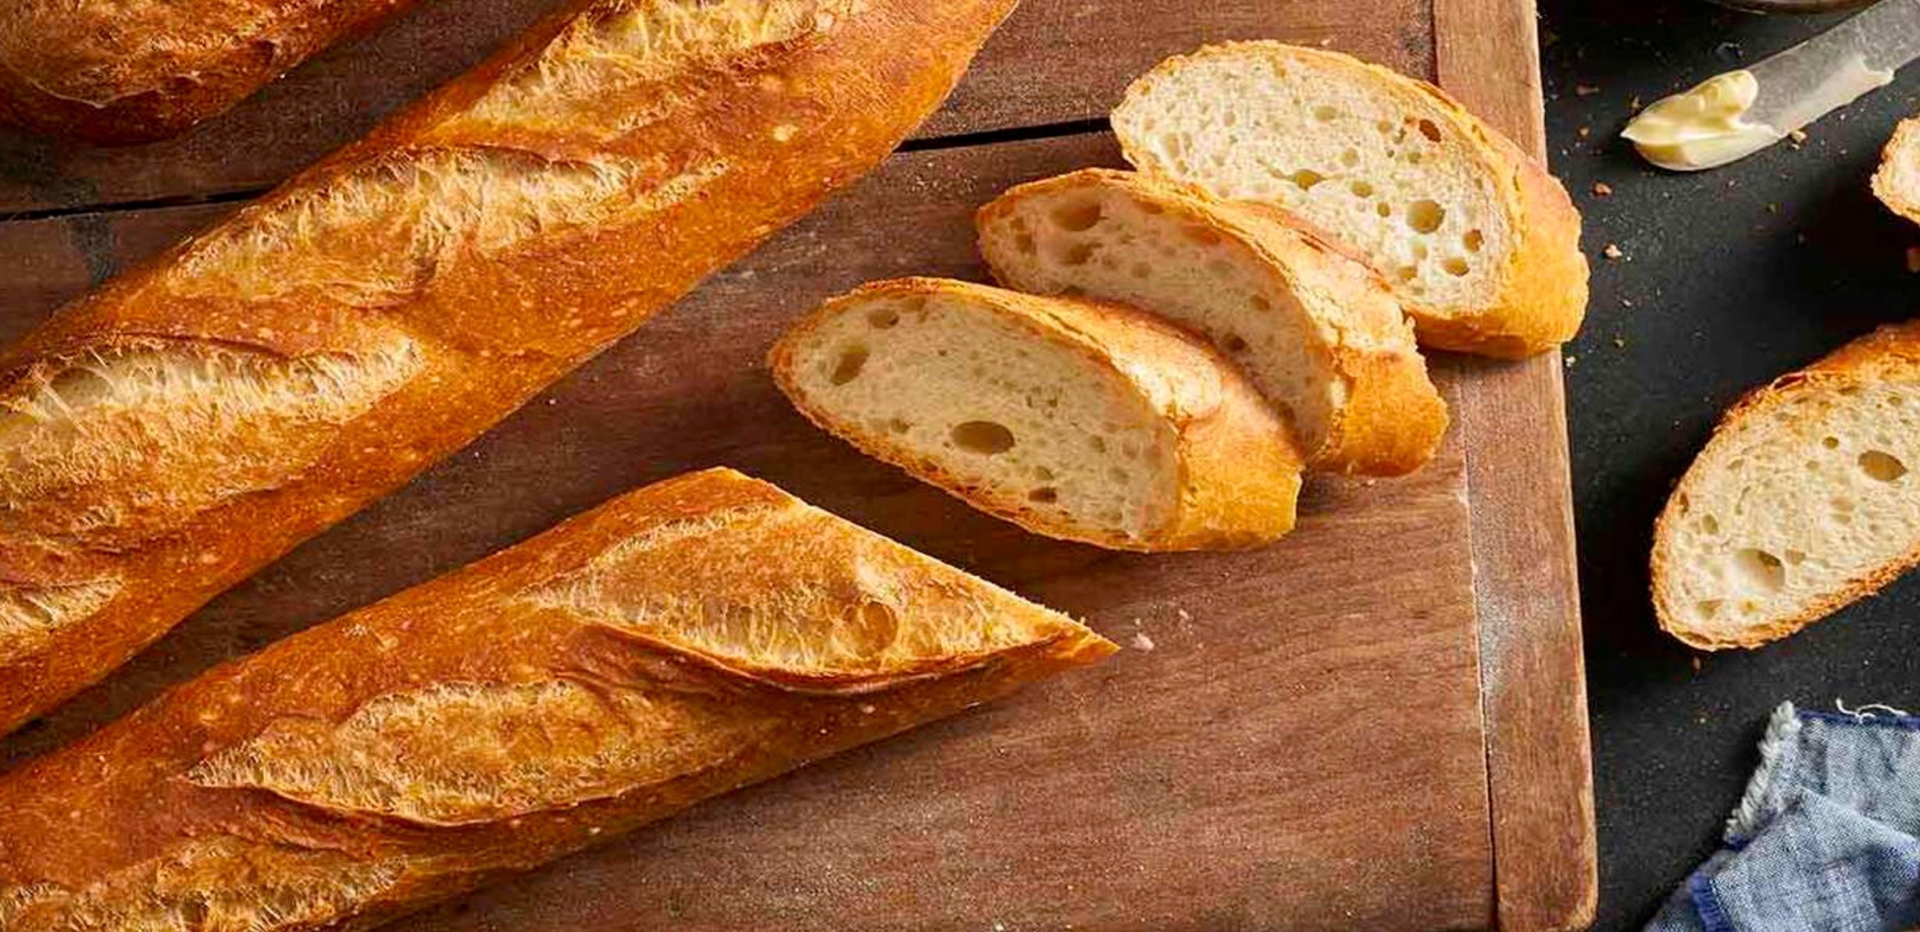 Công thức nấu ăn ngon từ bột mì, hầu hết các công thức đều dễ làm, chỉ cần bột mì là đủ - Ảnh 21